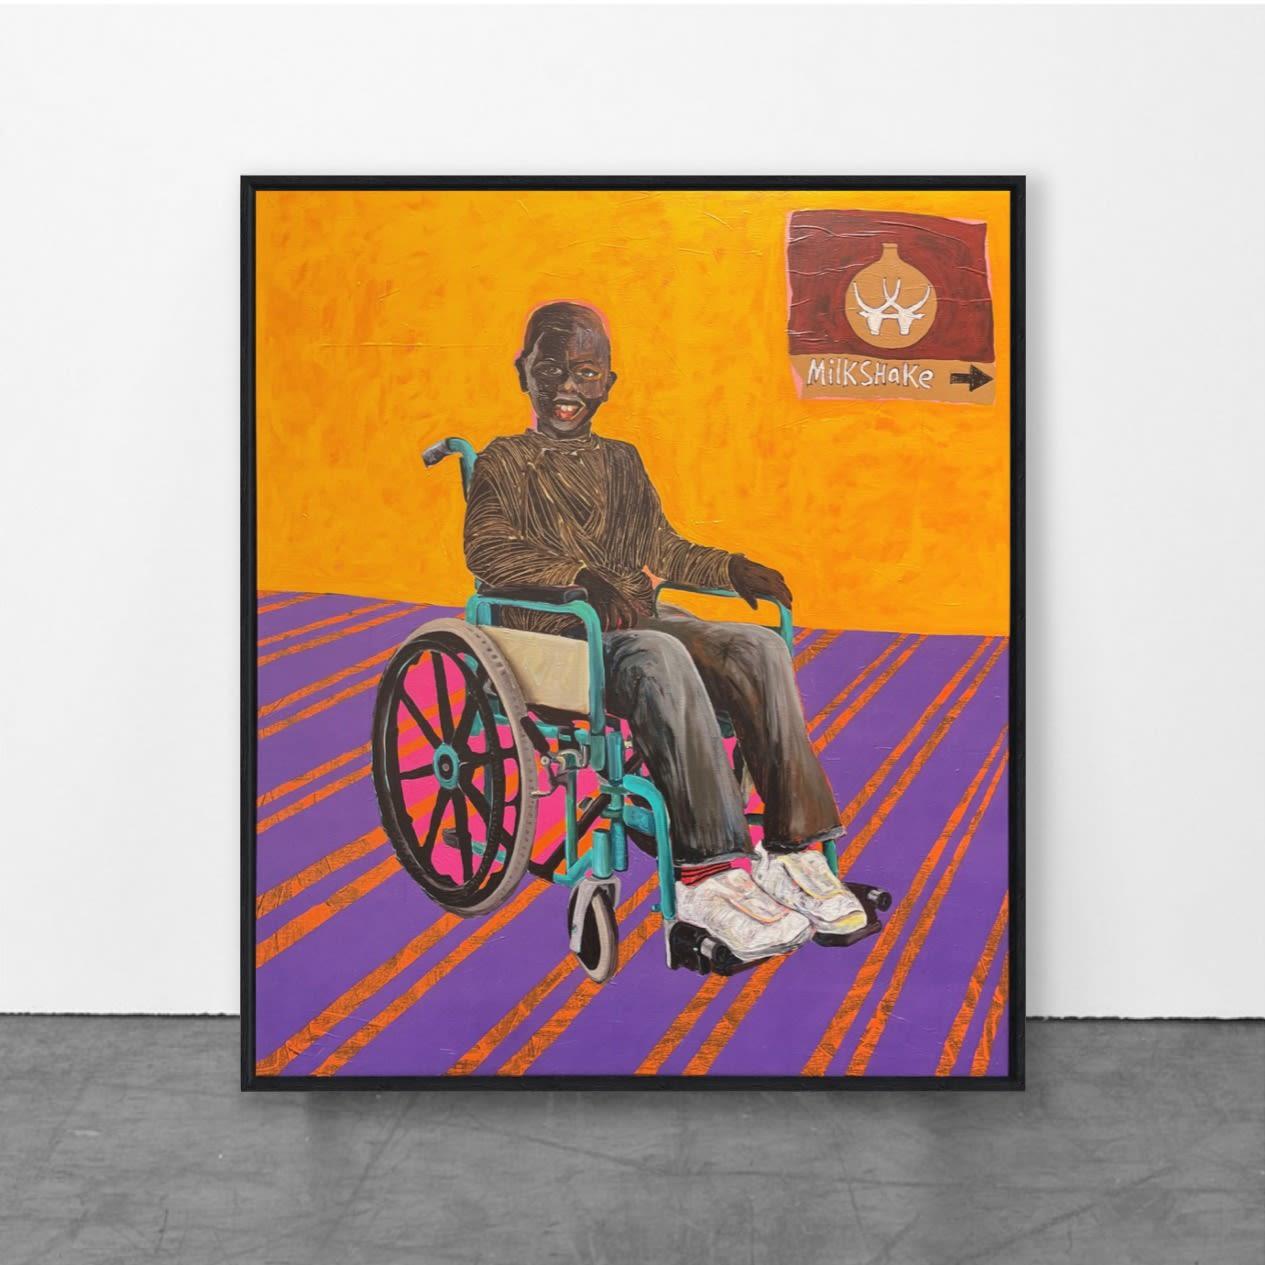 Junge im Rollstuhl, 2022
von Collin Sekajugo
3D-Druck, Silikon auf Leinwand, montiert auf Dibond
Signiert und nummeriert vom Künstler auf der Rückseite des Kunstwerks
Auflage von 35
Gerahmt (Holz)
In neuwertigem Zustand (wie vom Verlag